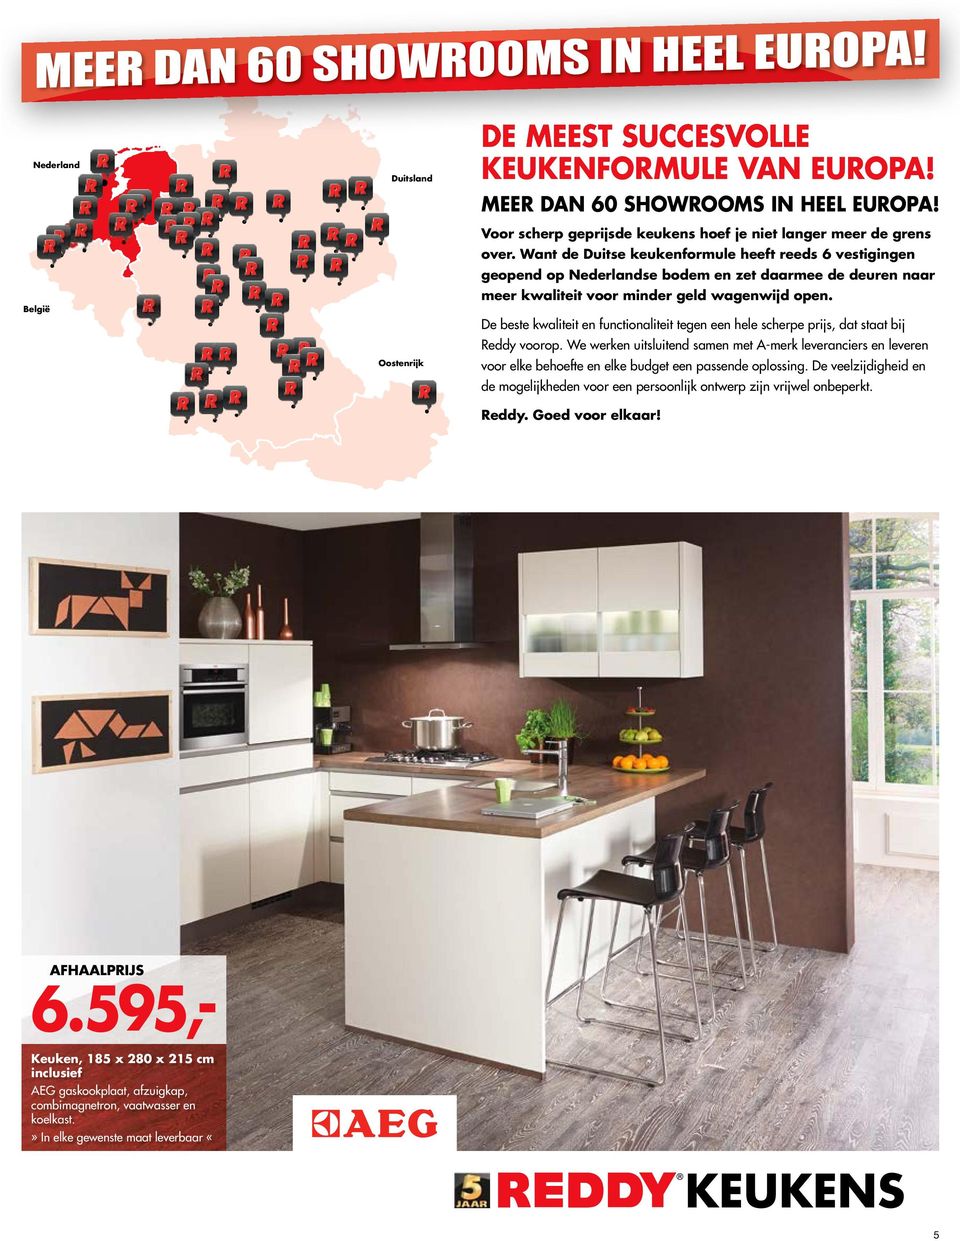 Want de Duitse keukenformule heeft reeds 6 vestigingen geopend op Nederlandse bodem en zet daarmee de deuren naar meer kwaliteit voor minder geld wagenwijd open.